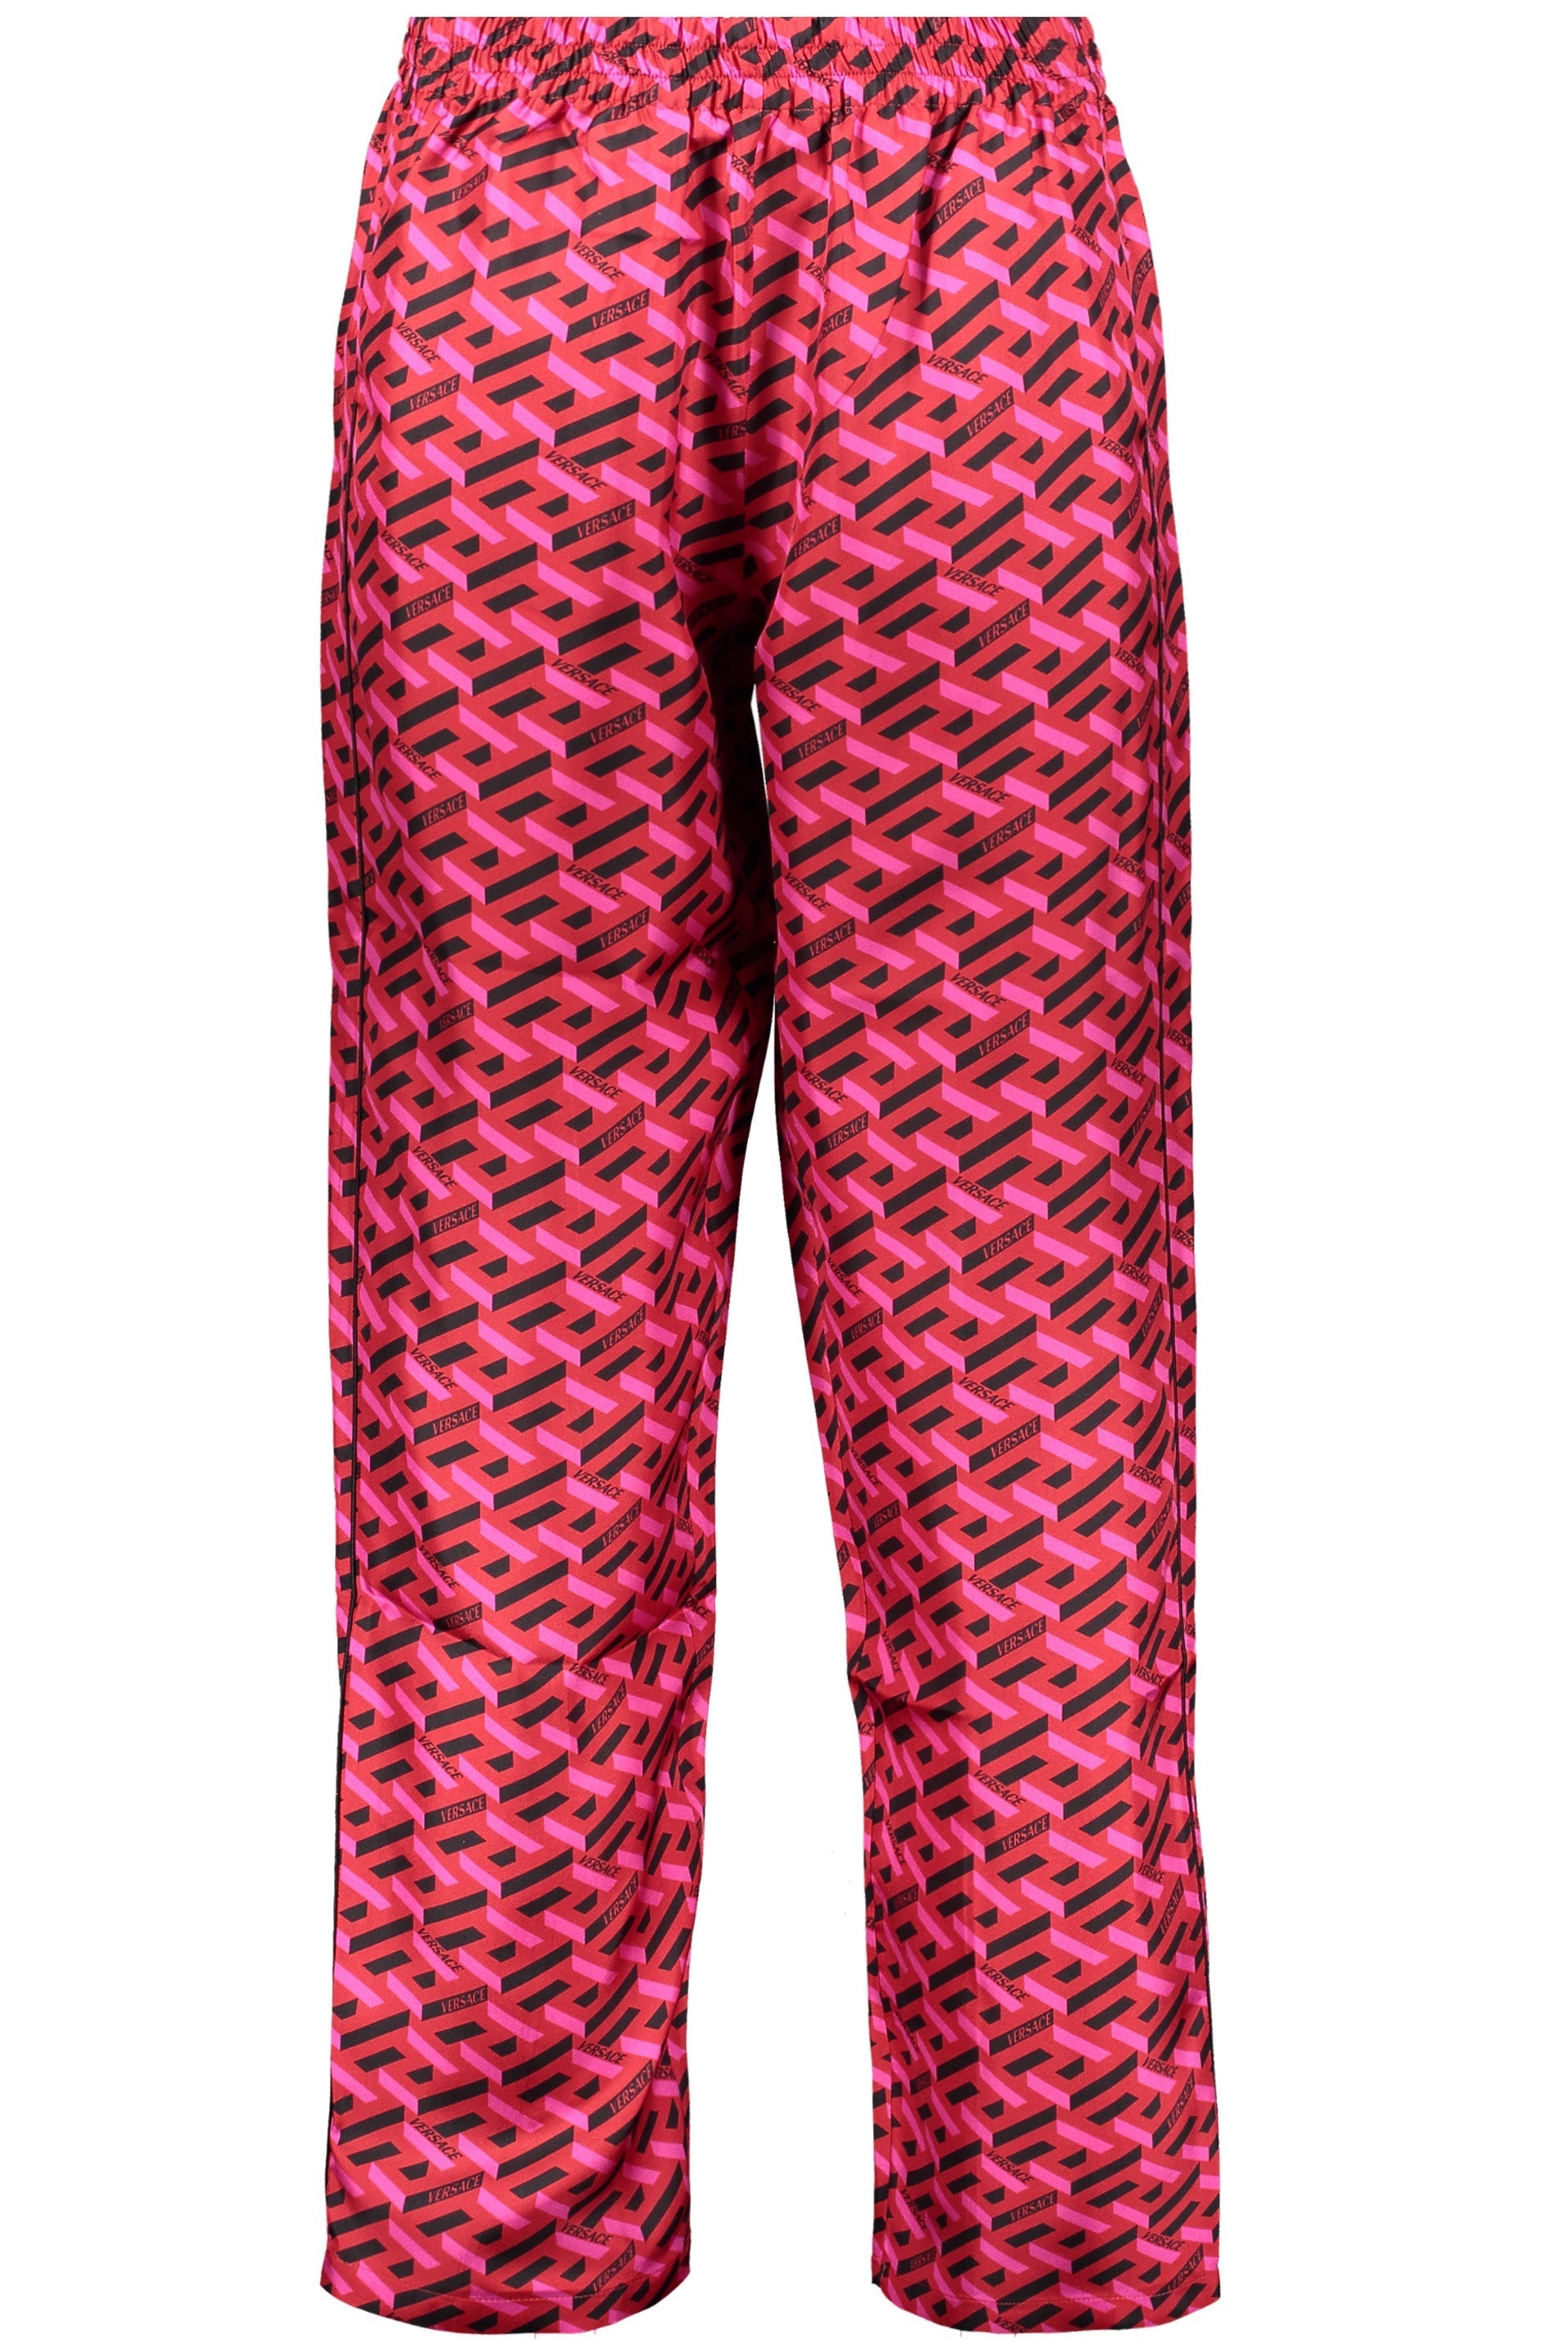 Silk pajama pants-Versace-OUTLET-SALE-1-ARCHIVIST